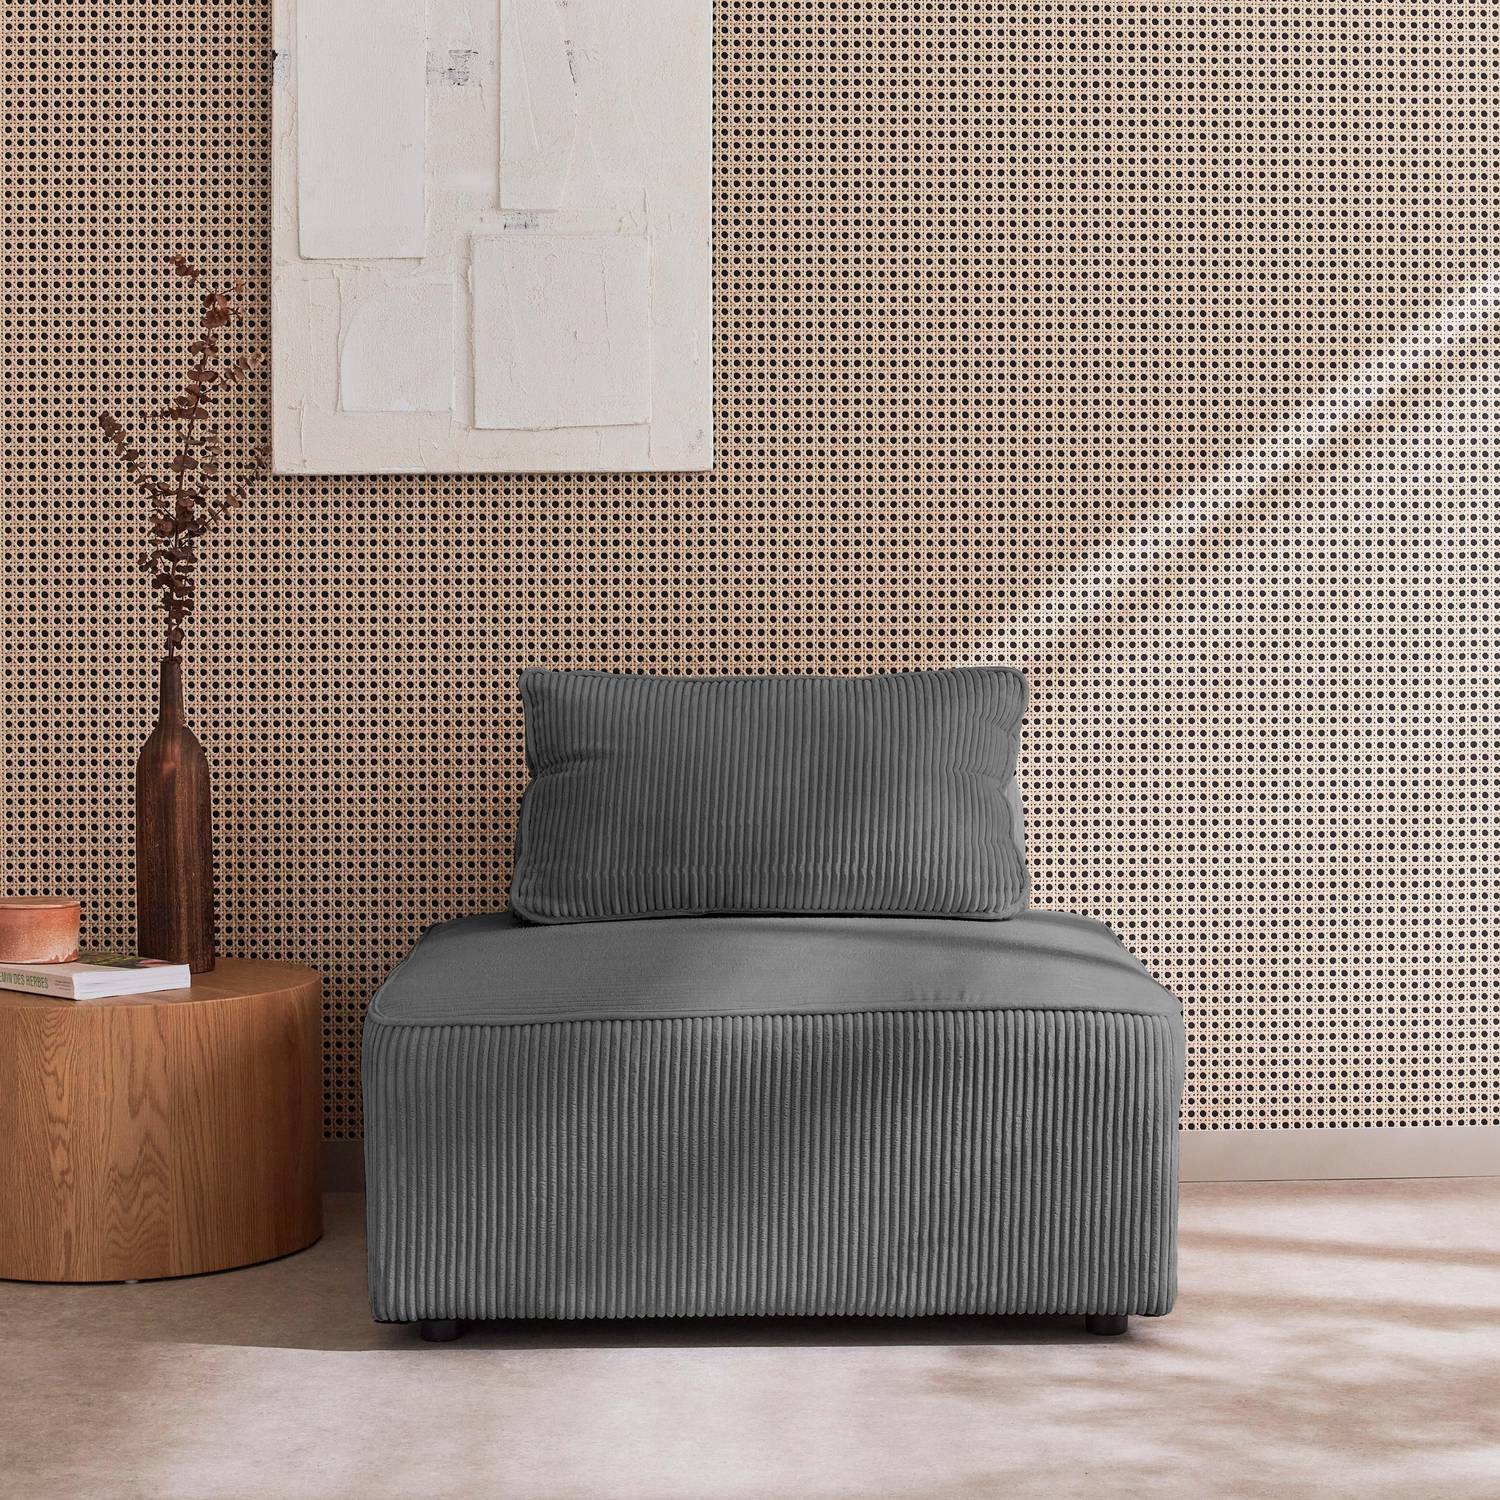 Sessel ohne Armlehne mit grauem Cordbezug für ein modulares Sofa Photo1